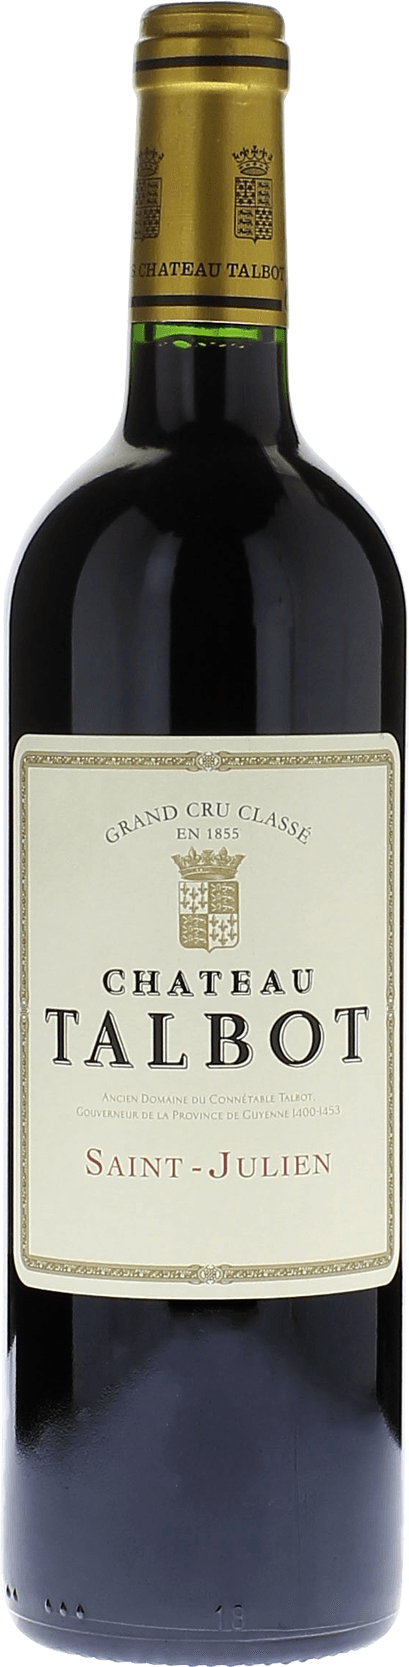 Talbot 2015 4me Grand cru class Saint-Julien, Bordeaux rouge